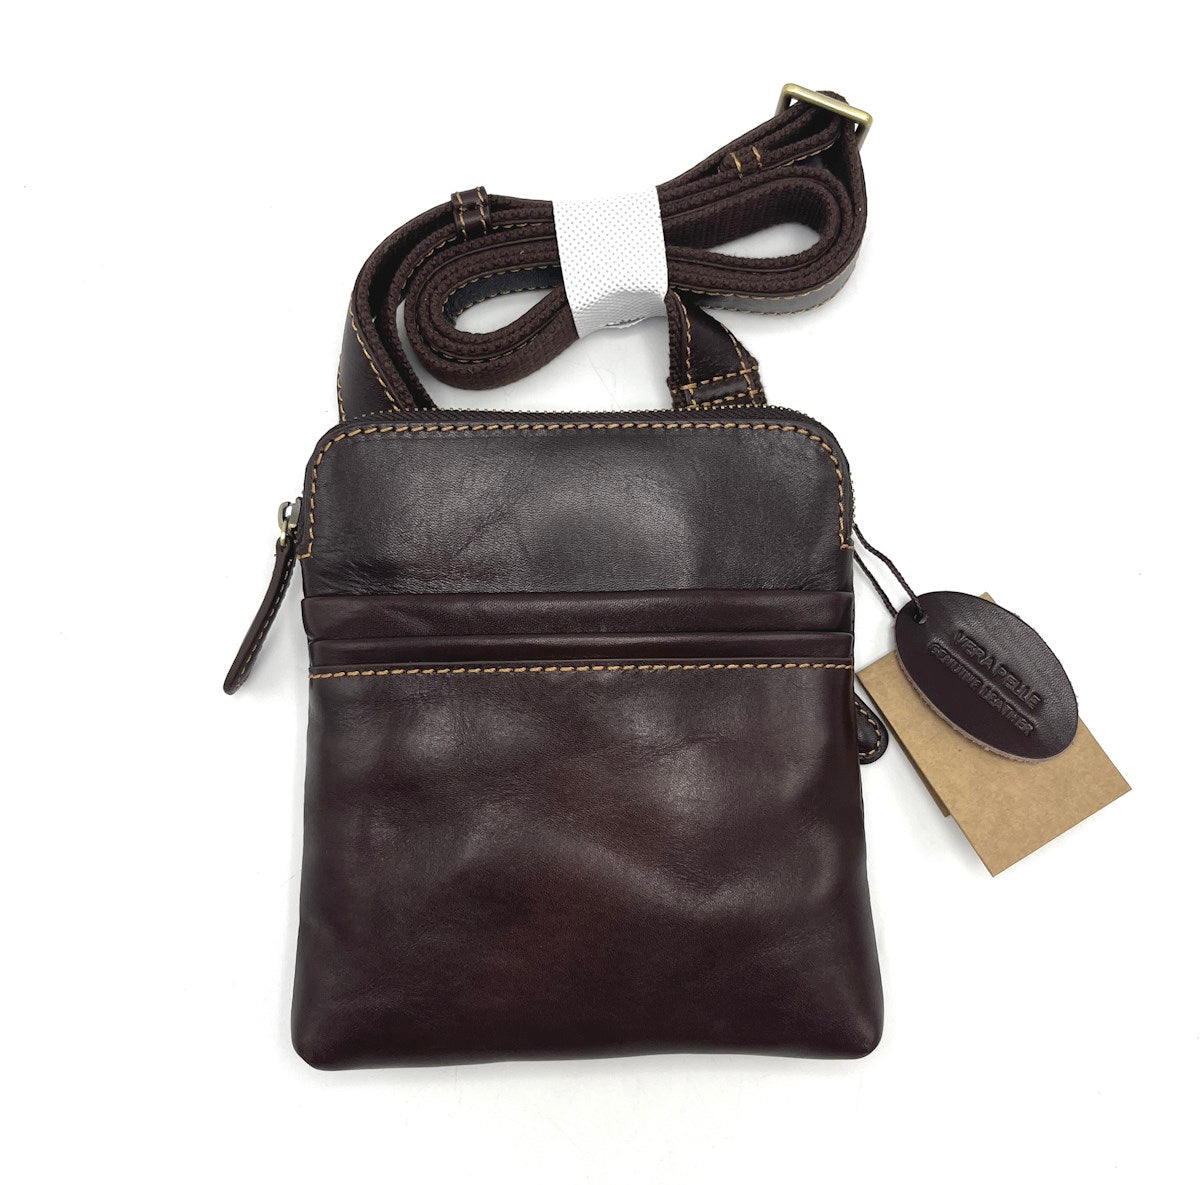 Buffered leather shoulder bag, for men, art. TA4806